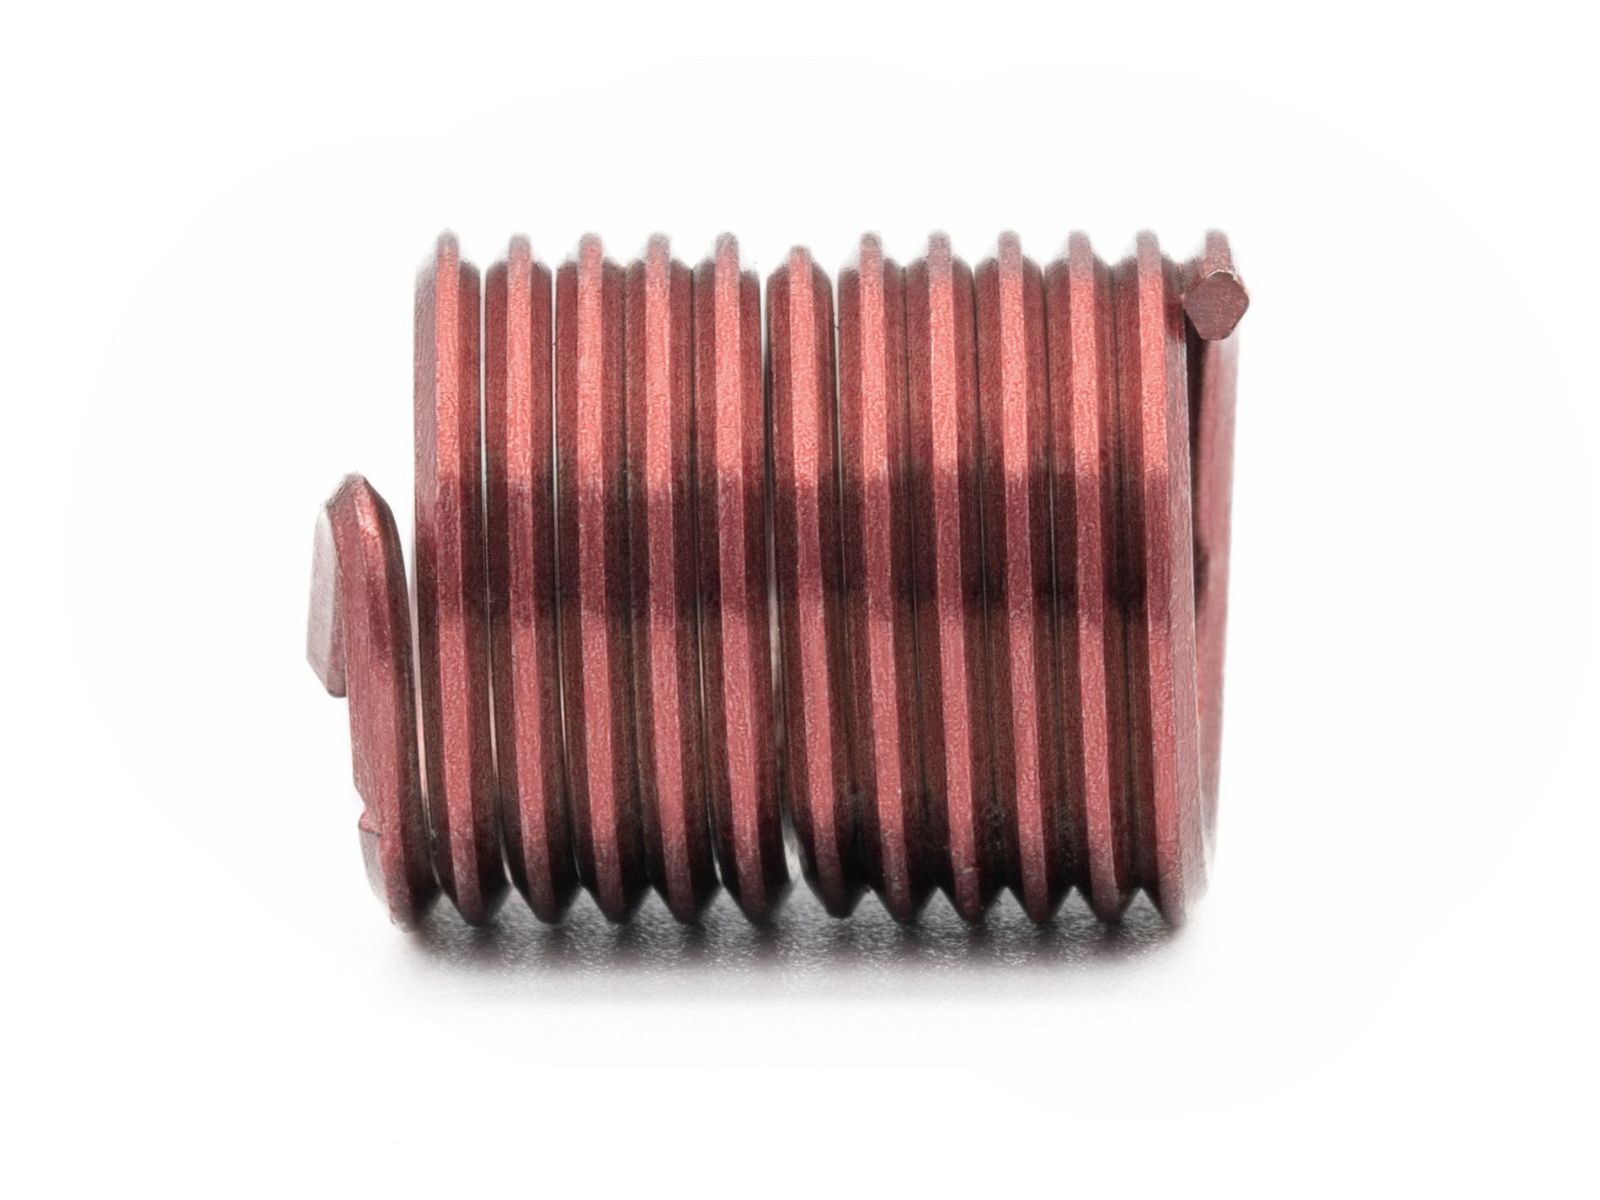 BaerCoil Wire Thread Inserts UNF 7/16 x 20 - 2.0 D (22.23 mm) - screw grip (screw locking) - 100 pcs.